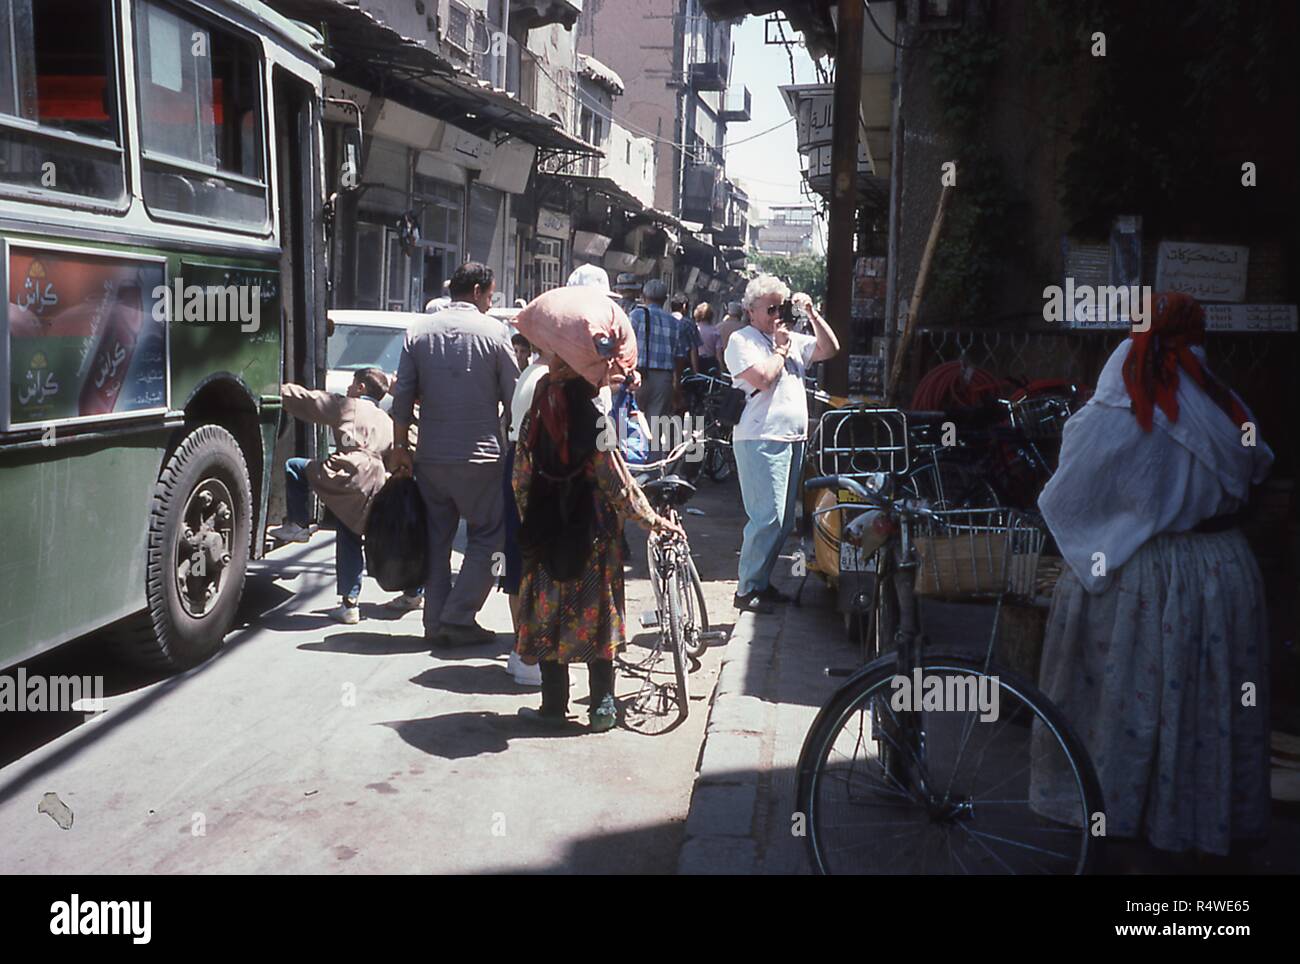 Szene einer Gasse mit Fußgänger- und Fahrzeugverkehr, in Damaskus, Syrien, Juni 1994 gefüllt. Im Rahmen einer westlichen Touristen fotografiert den Marktstand von der Seite der Straße. Am linken Rand ein kleiner Junge steigt auf einen Stadtbus mit Werbung in Arabisch für unterschiedliche Varianten von Crush Marke Soda. () Stockfoto